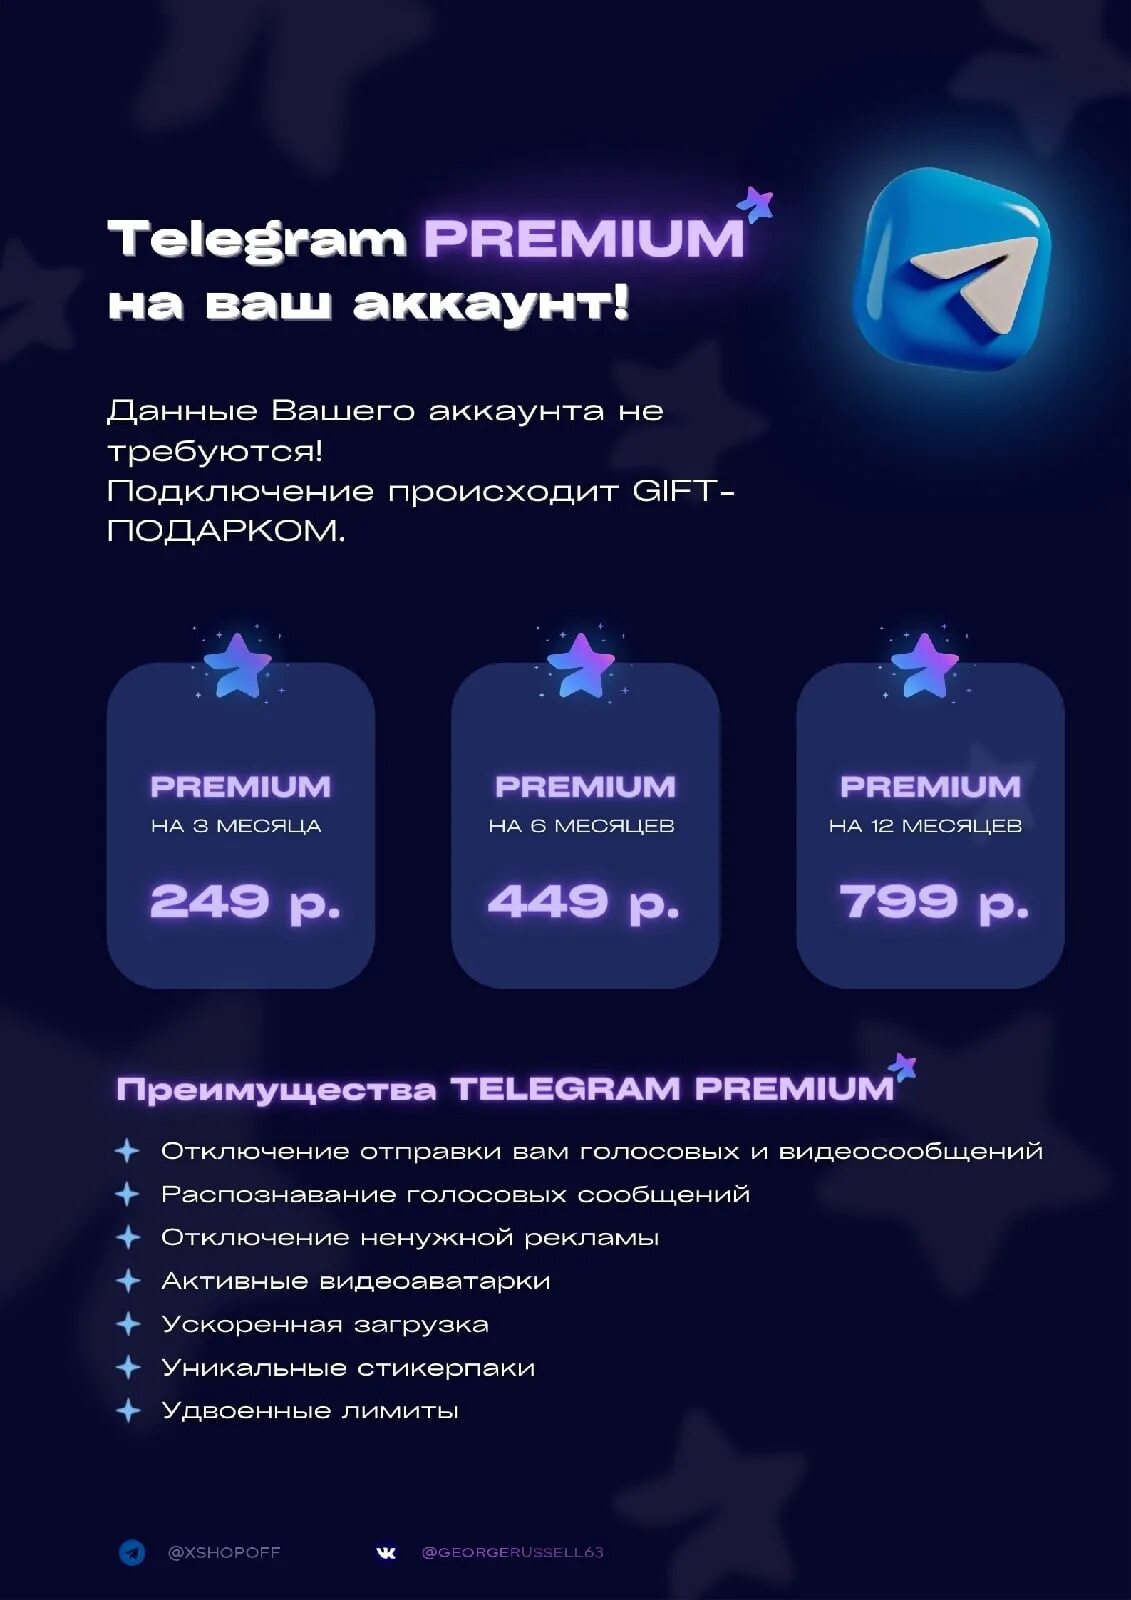 Купить телеграм премиум на месяц